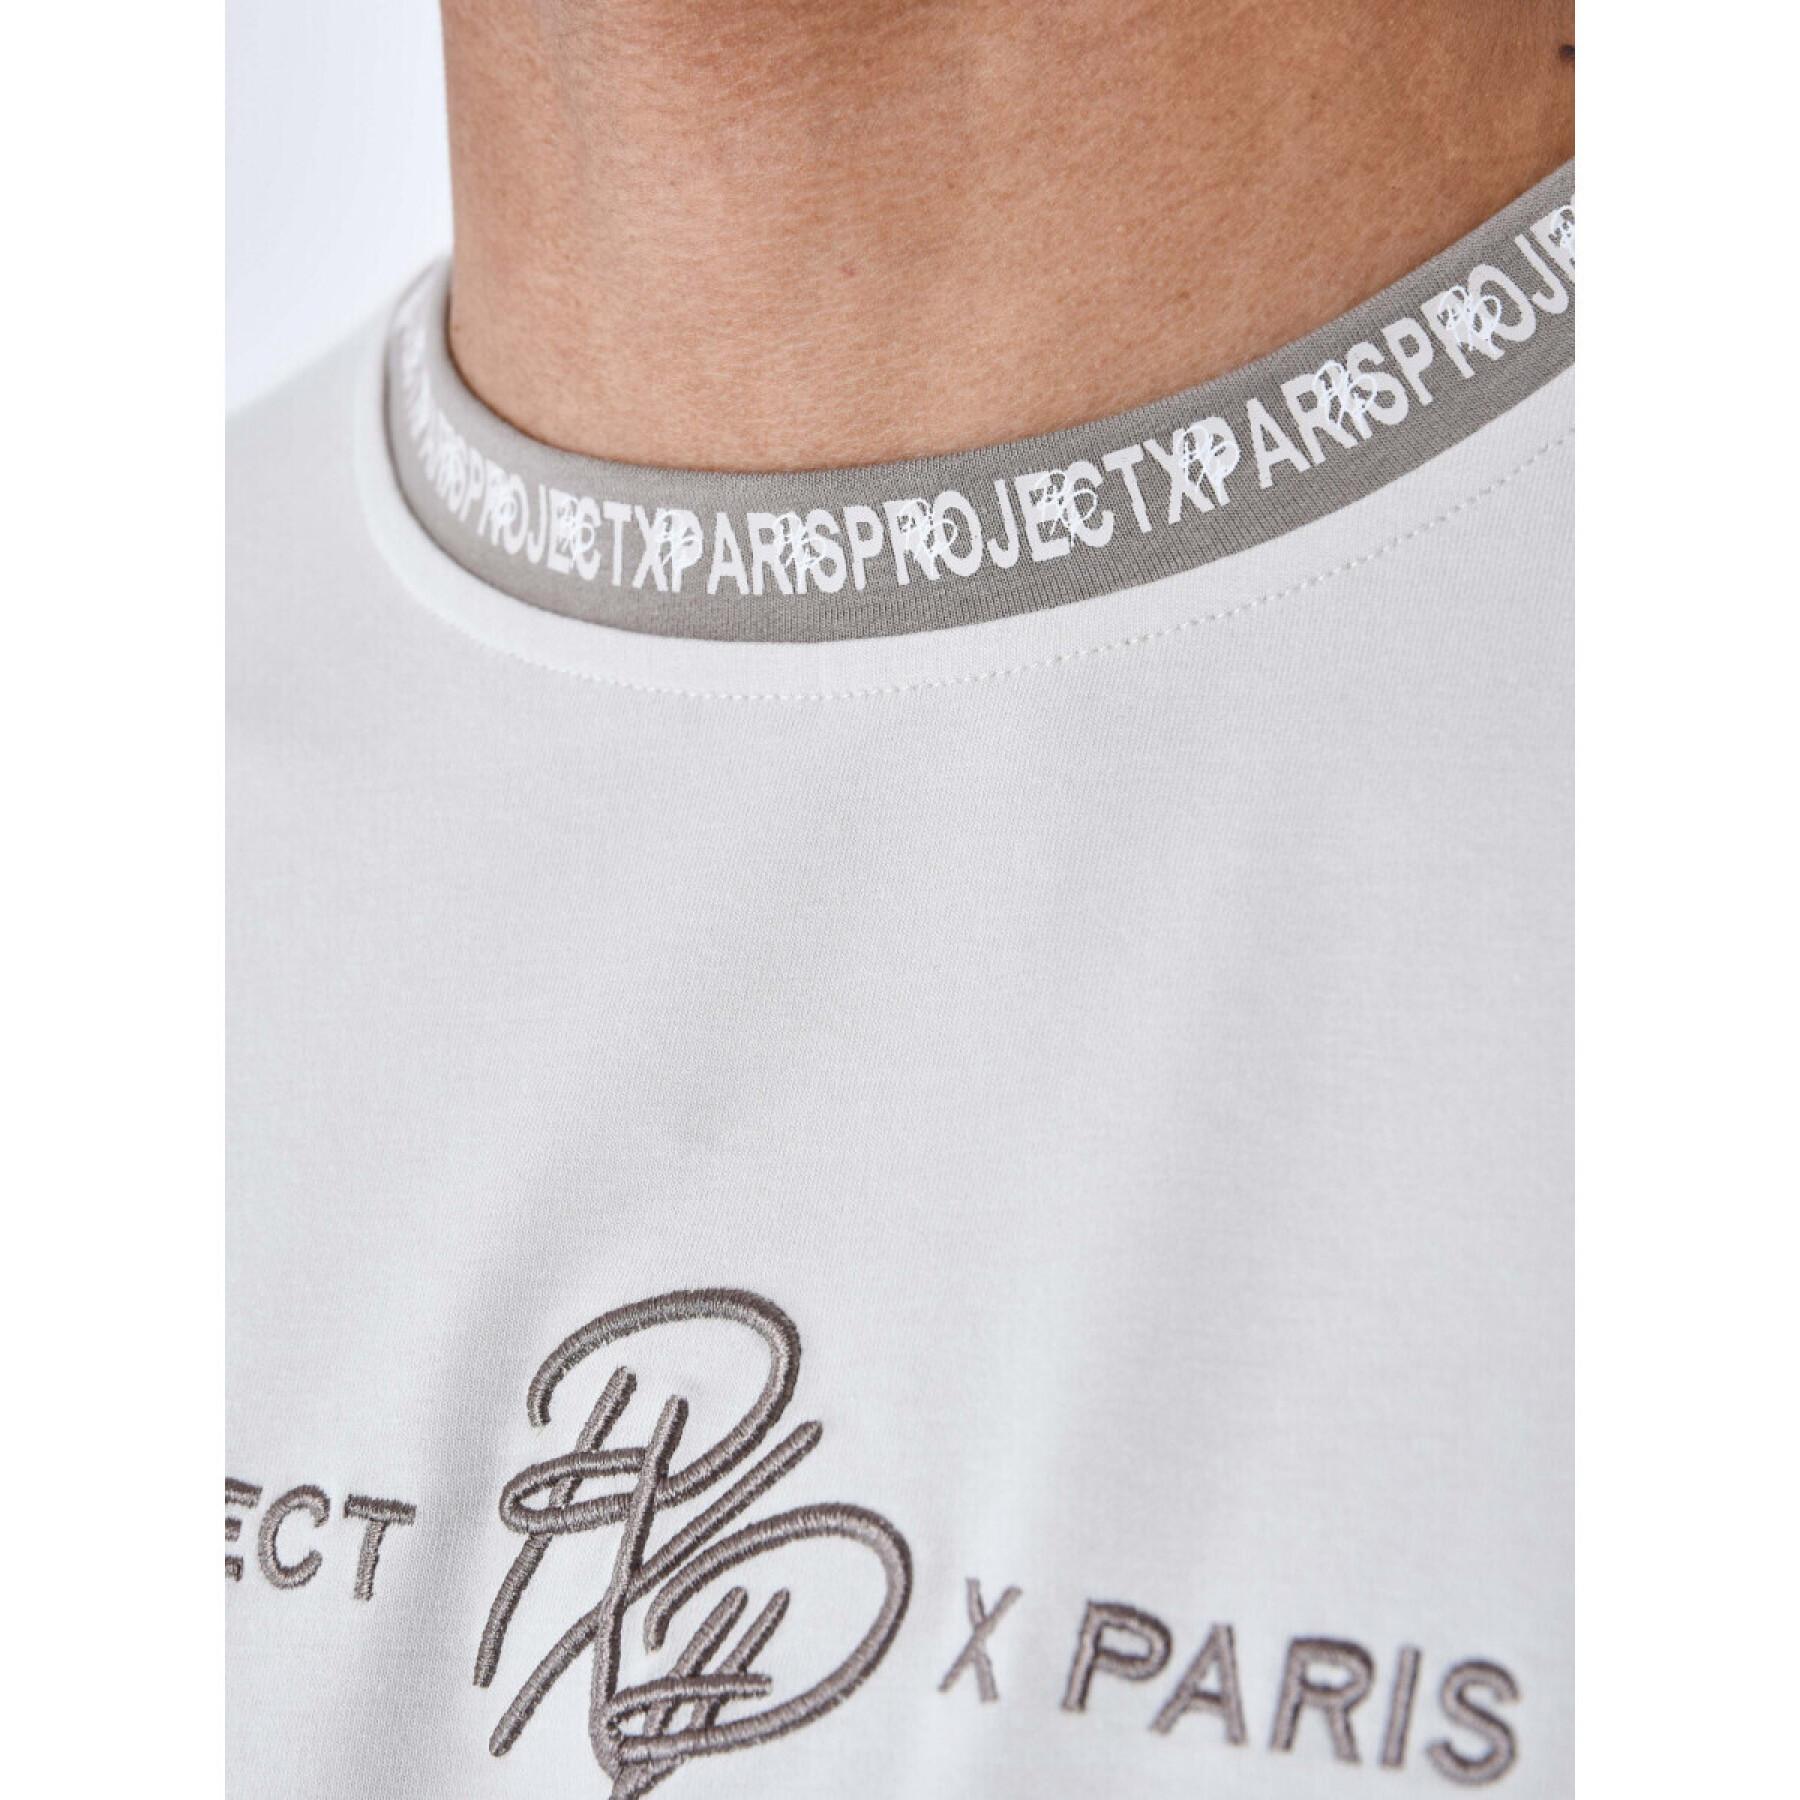 Plain t-shirt with logo band Project X Paris